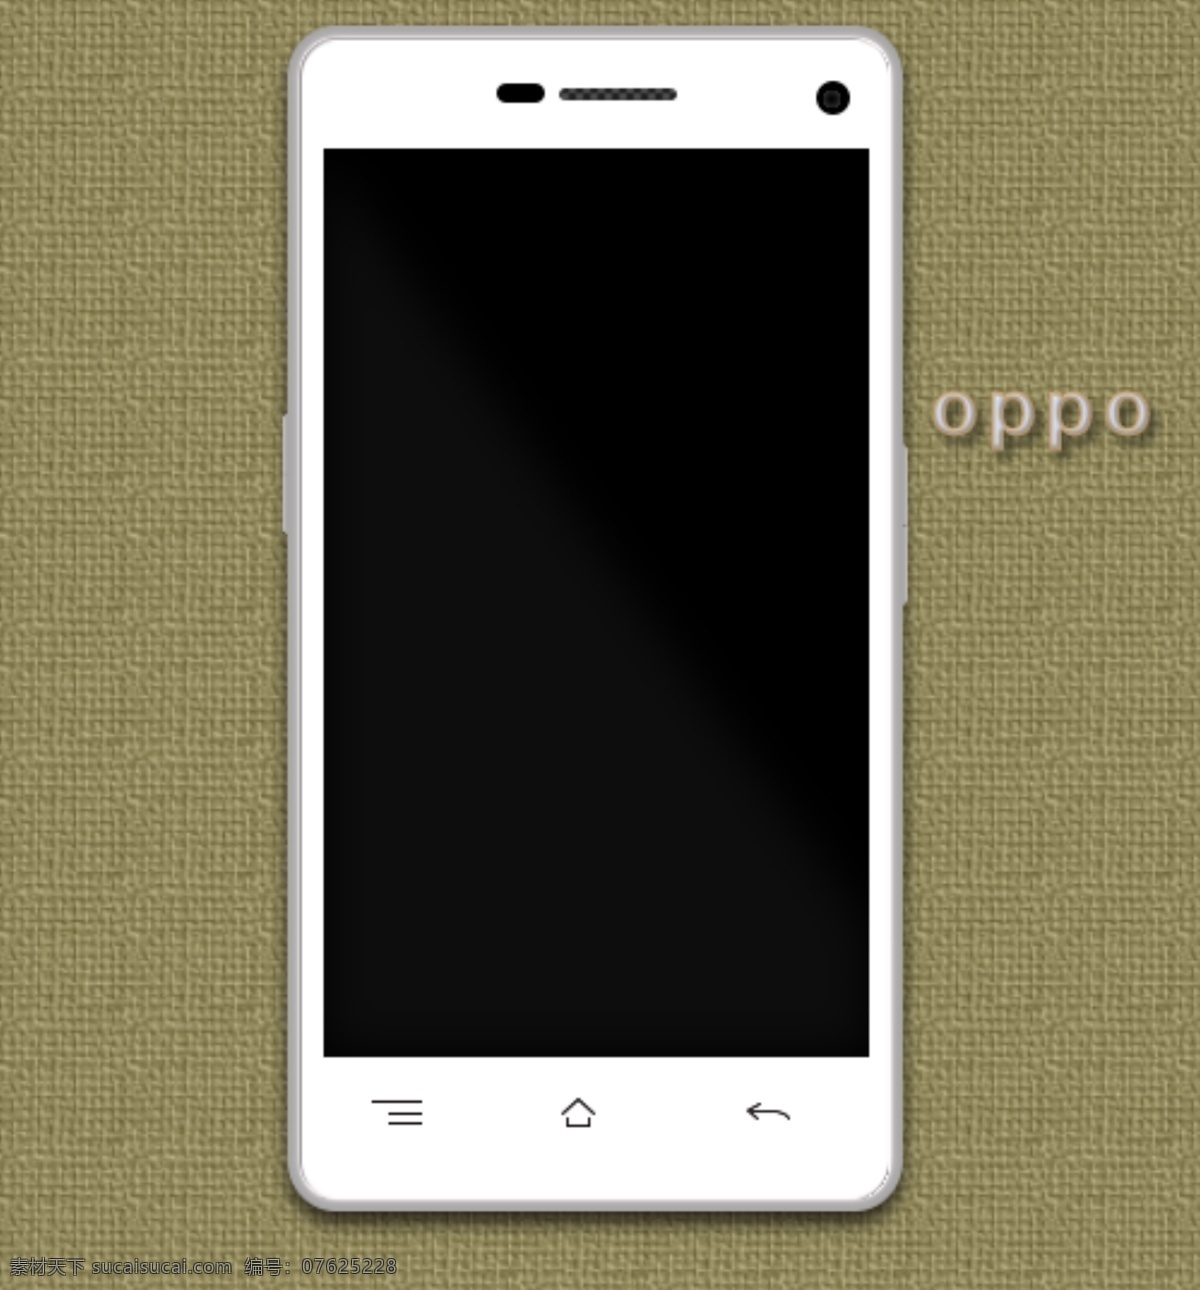 oppo oppo手机 矢量图 手机 数码产品 现代科技 cs6 本图 ps 制作 简单 请 大家 放心